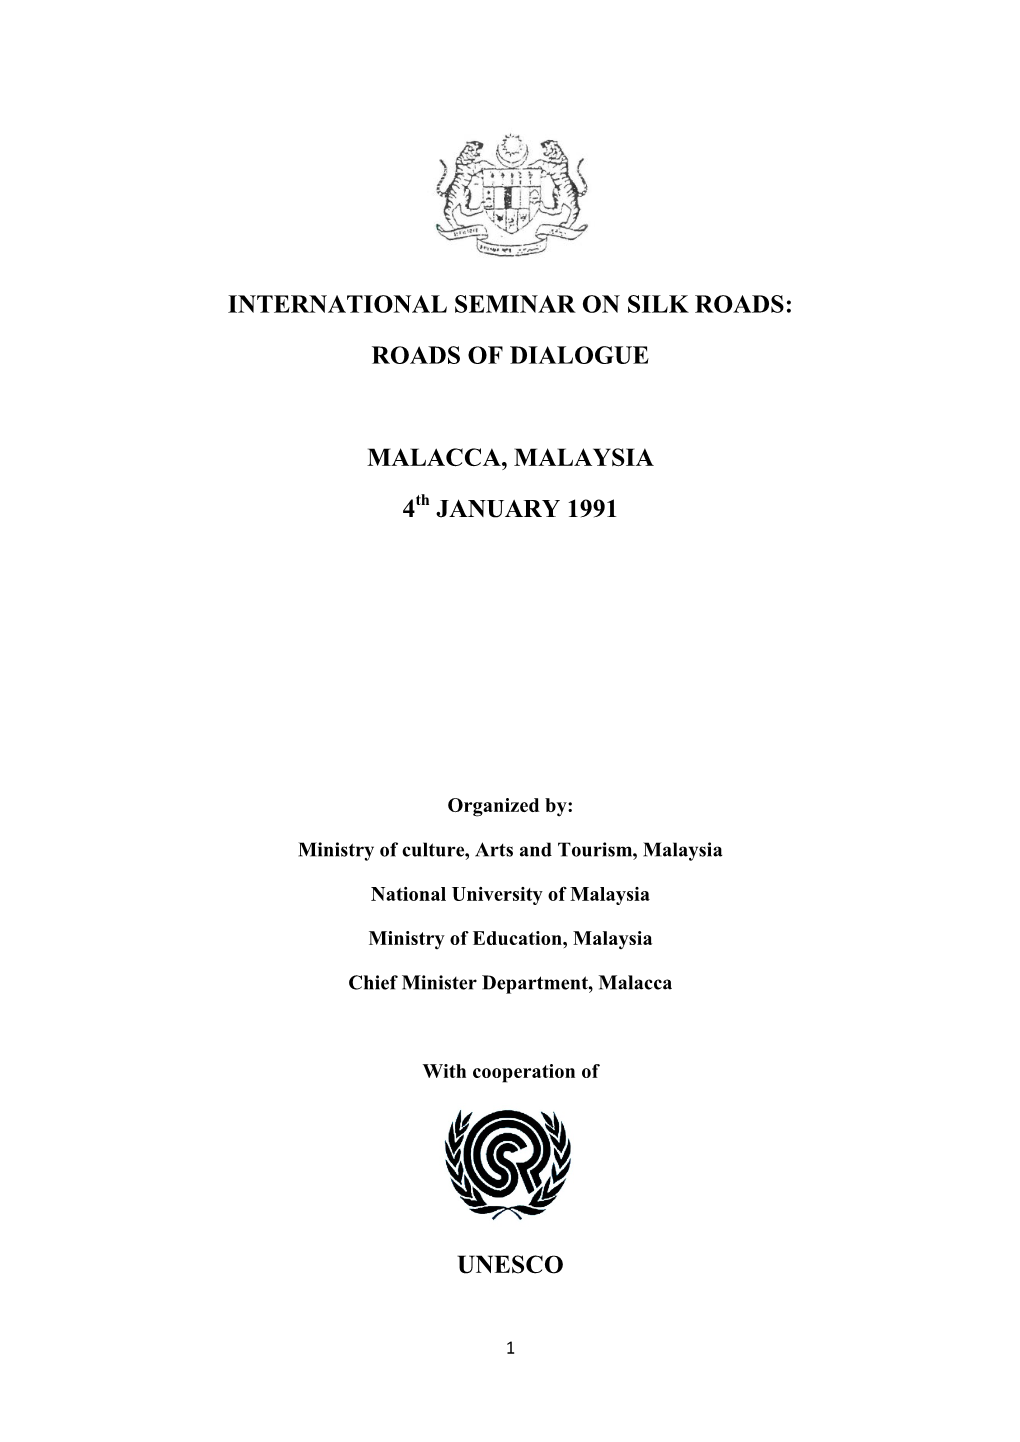 International Seminar on Silk Roads: Roads of Dialogue Malacca, Malaysia 4 January 1991 Unesco